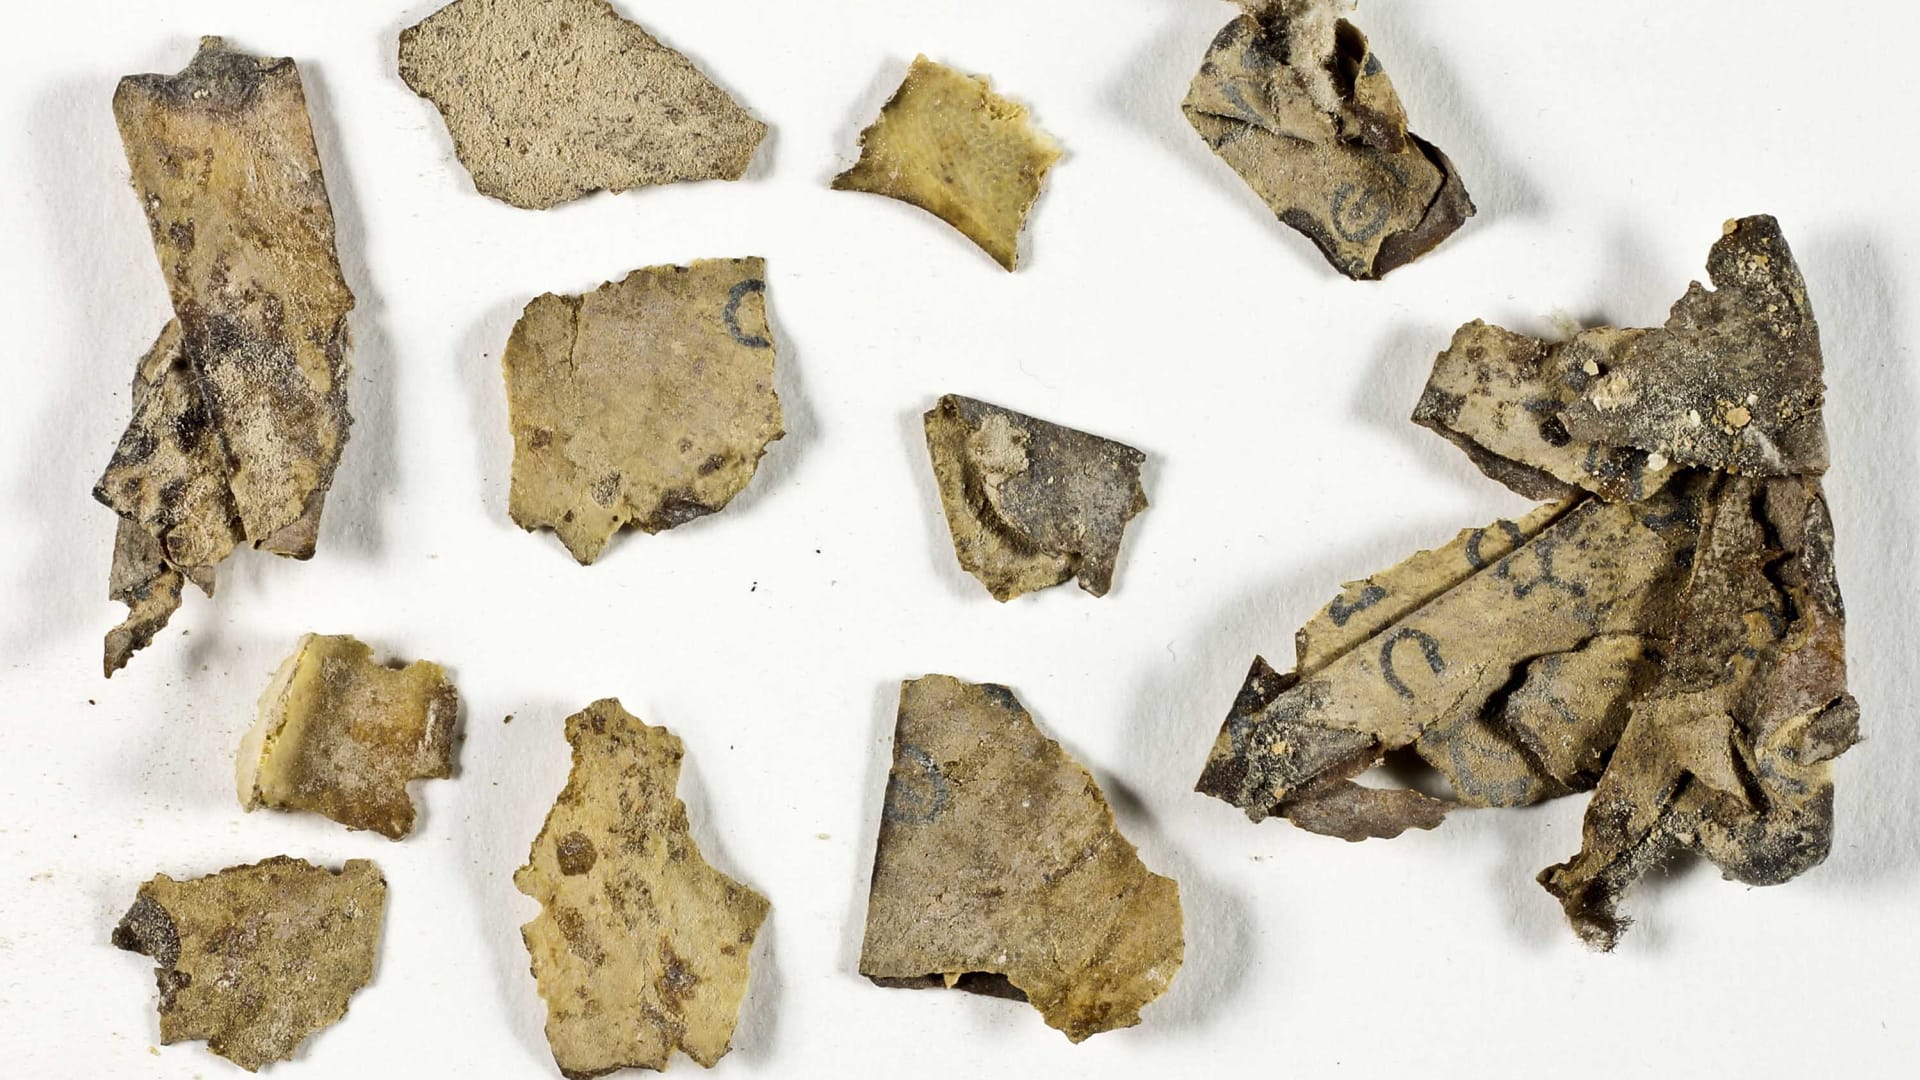 اكتشاف أجزاء من مخطوطة عمرها 2000 عام بالقرب من البحر الميت